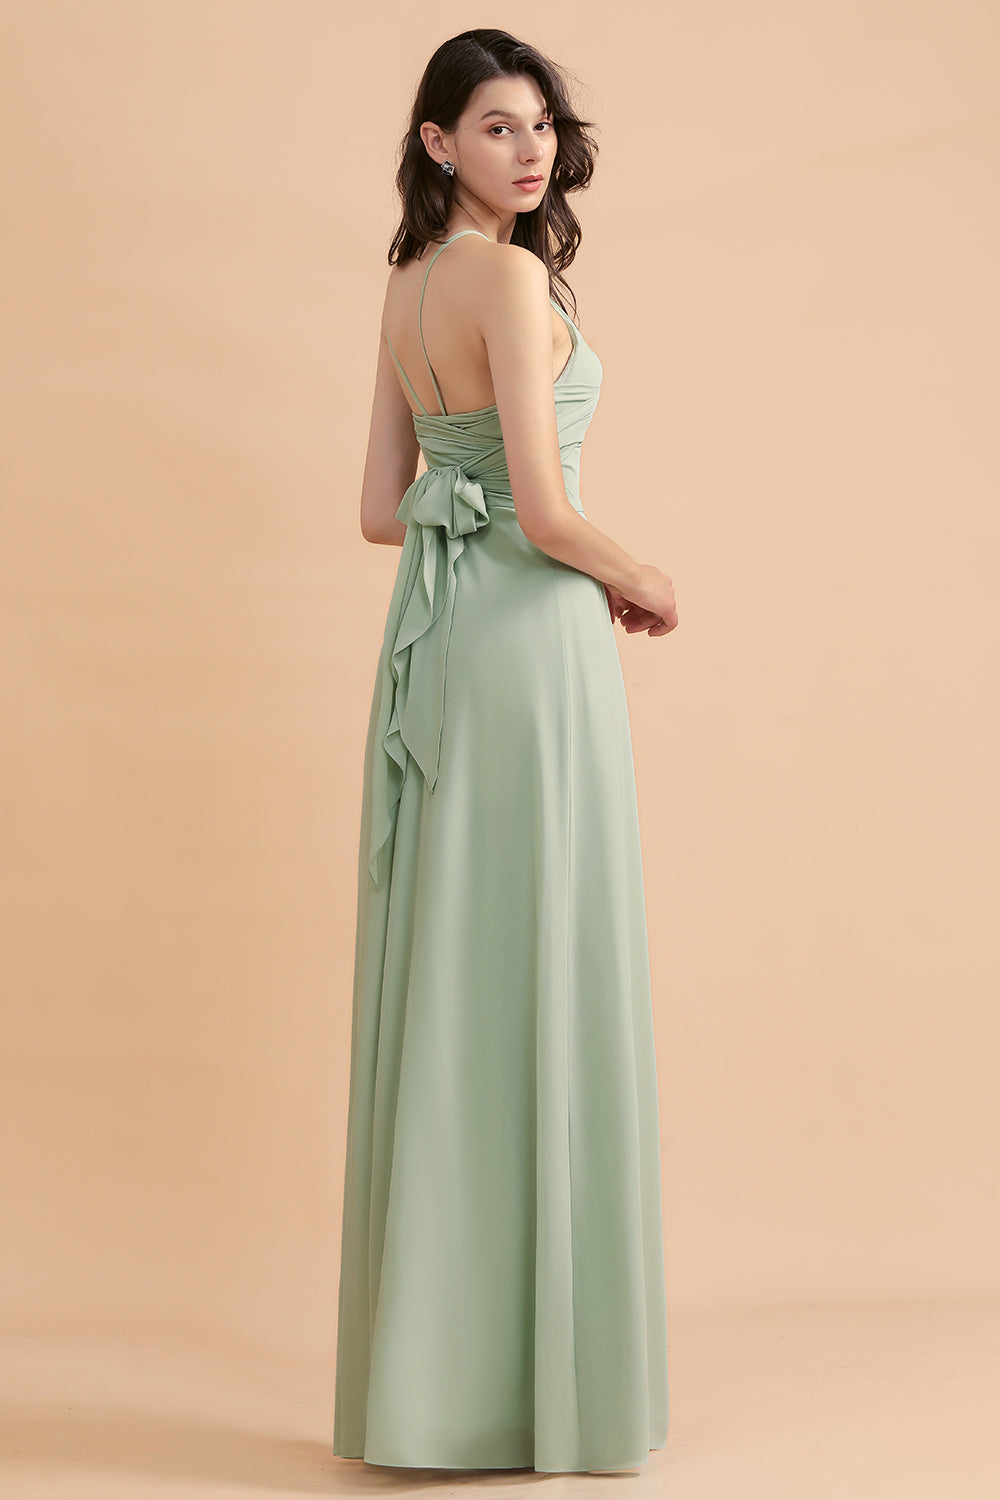 Stylish Jewel Sleeveless Dusty Sage Chiffon Bridesmaid Dress with Ruffles-27dress